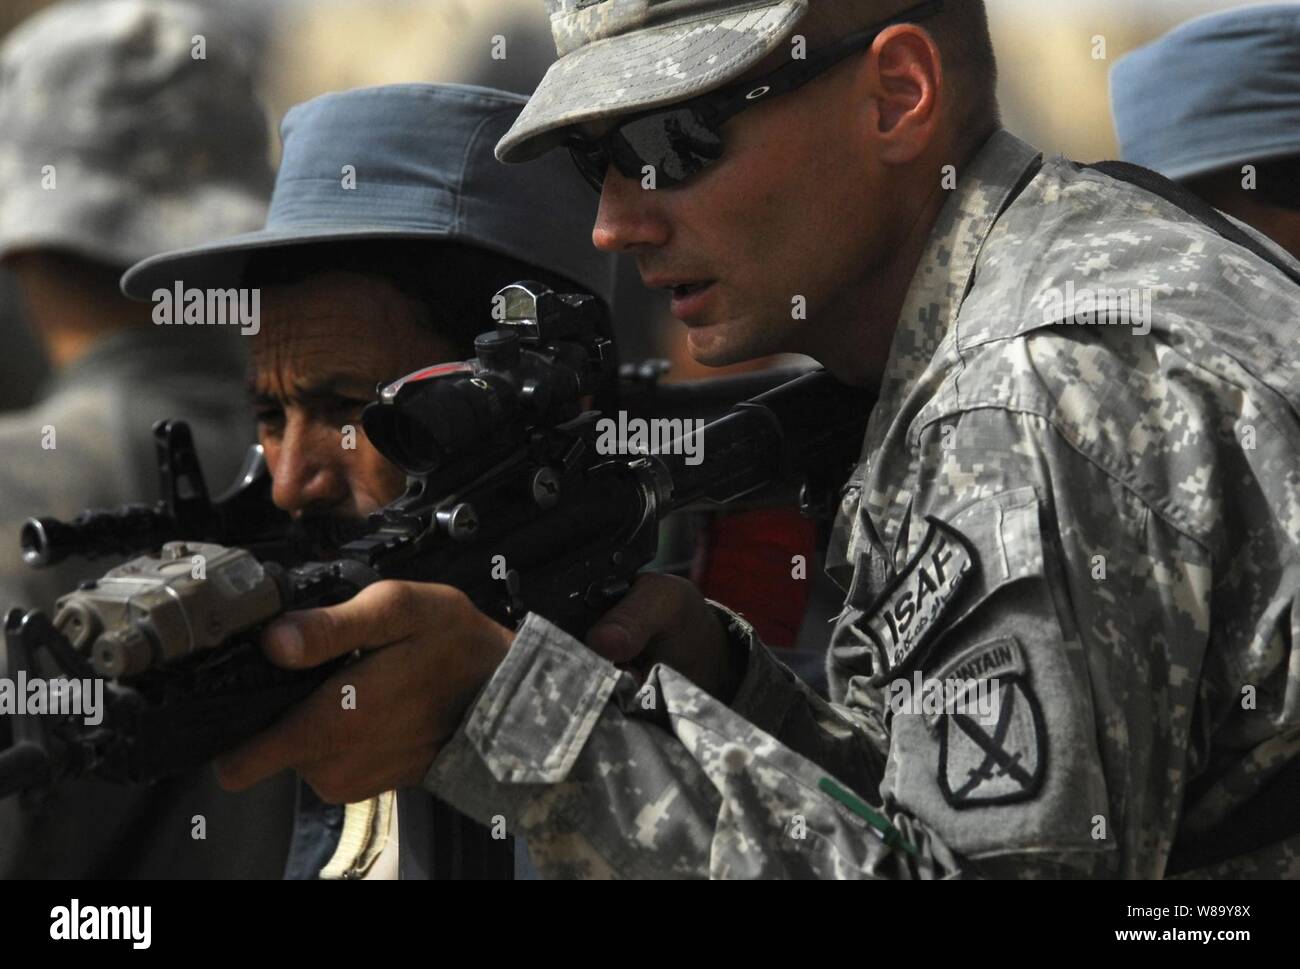 Us-Armee Sgt. James Henderson (rechts) Der 1 Battalion, 87th Infantry Regiment, 10 Mountain Division unterstützt die nationale afghanische Polizei Offizier während des call-out-Ausbildung bei dem Polizeipräsidium in Chahar Dara, Afghanistan, am 12.08.28., 2010. Stockfoto